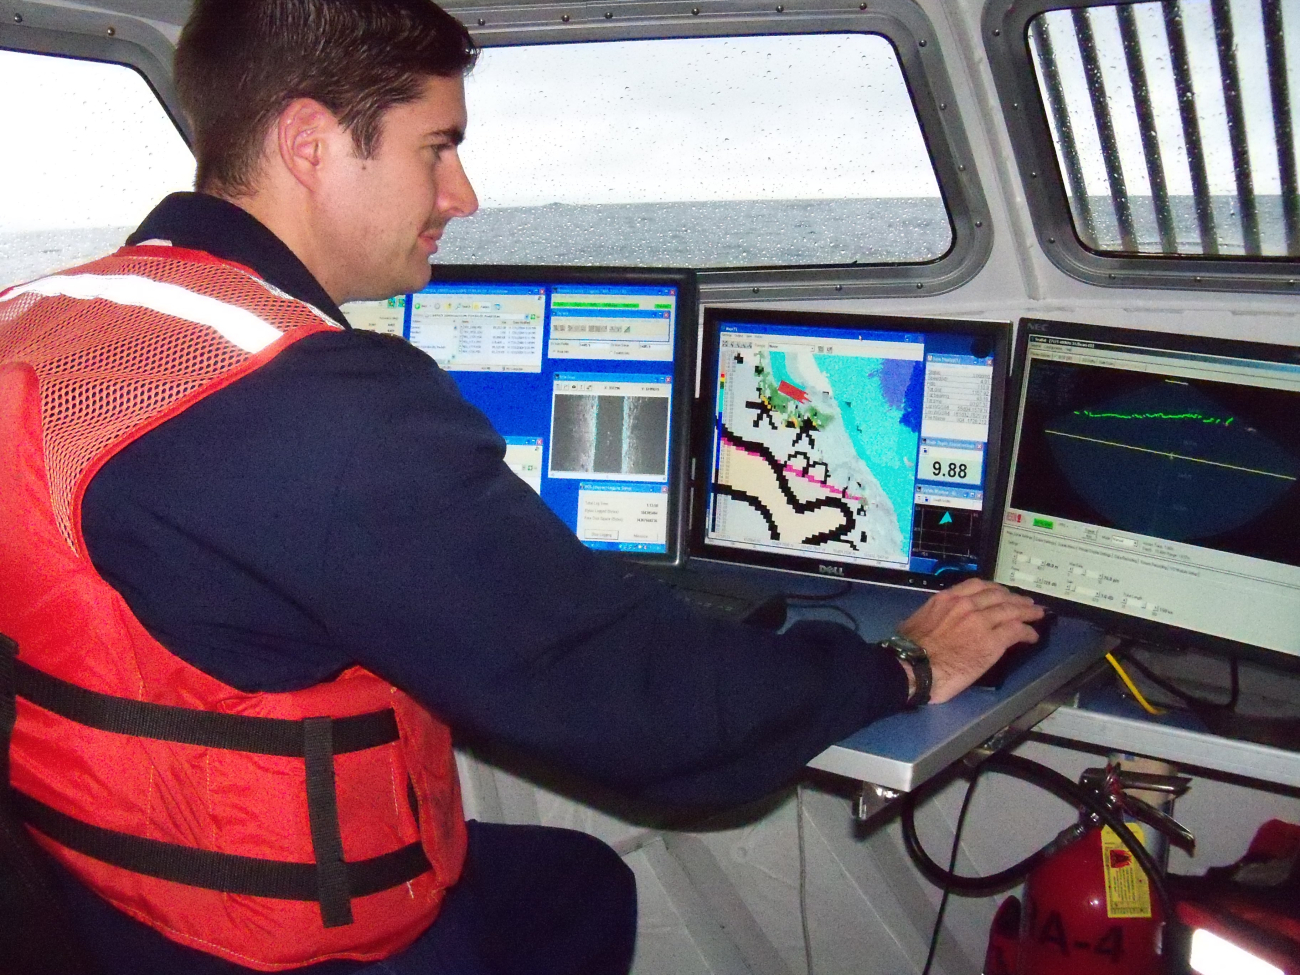 Launch work in Pavlof Islands off NOAA Ship RAINIER